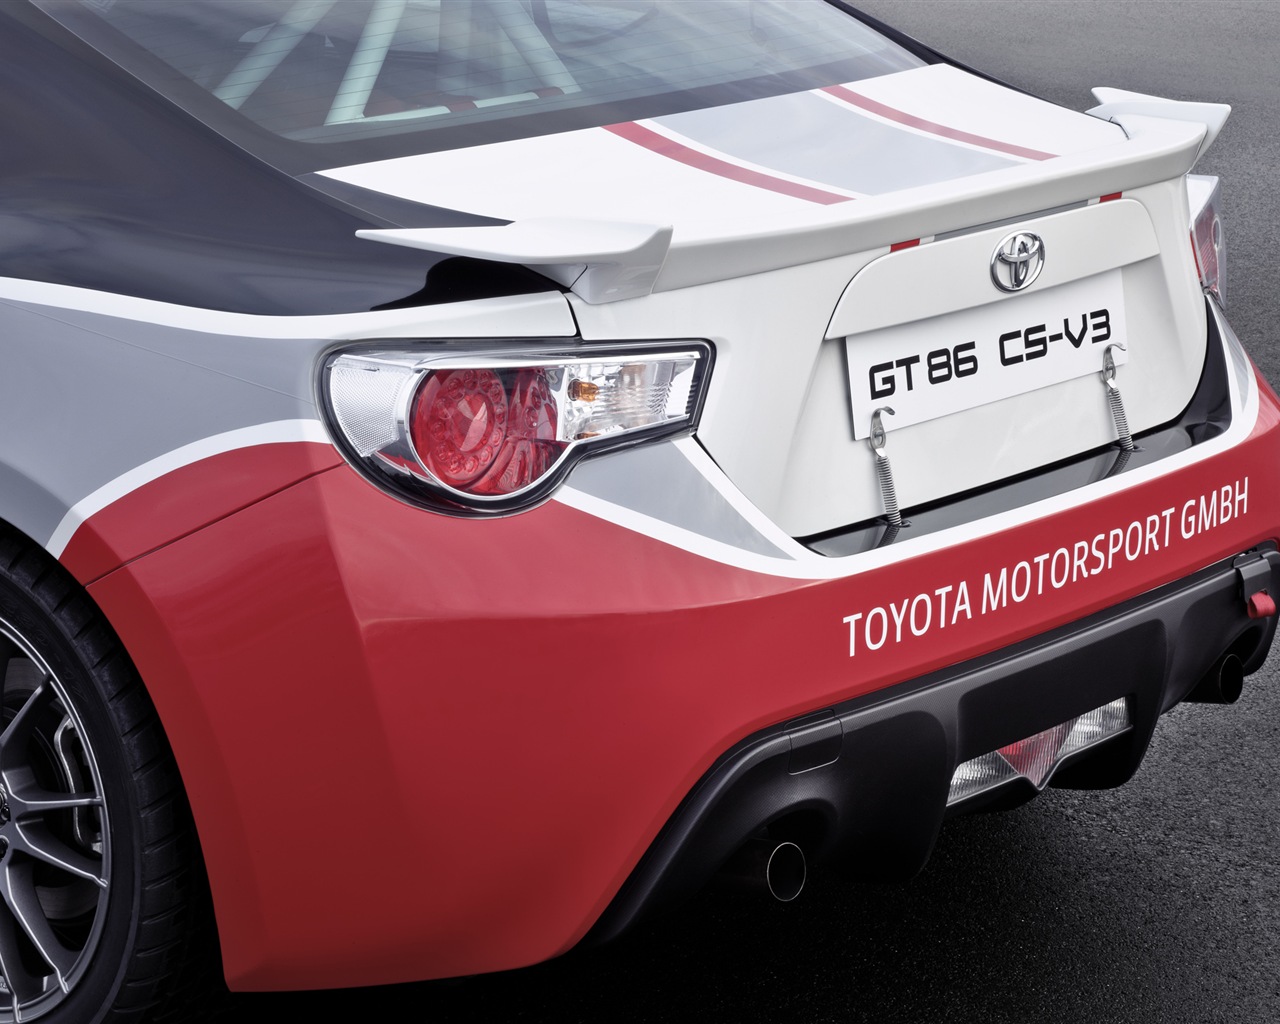 2012 Toyota GT86 CS-V3 HD wallpapers #20 - 1280x1024